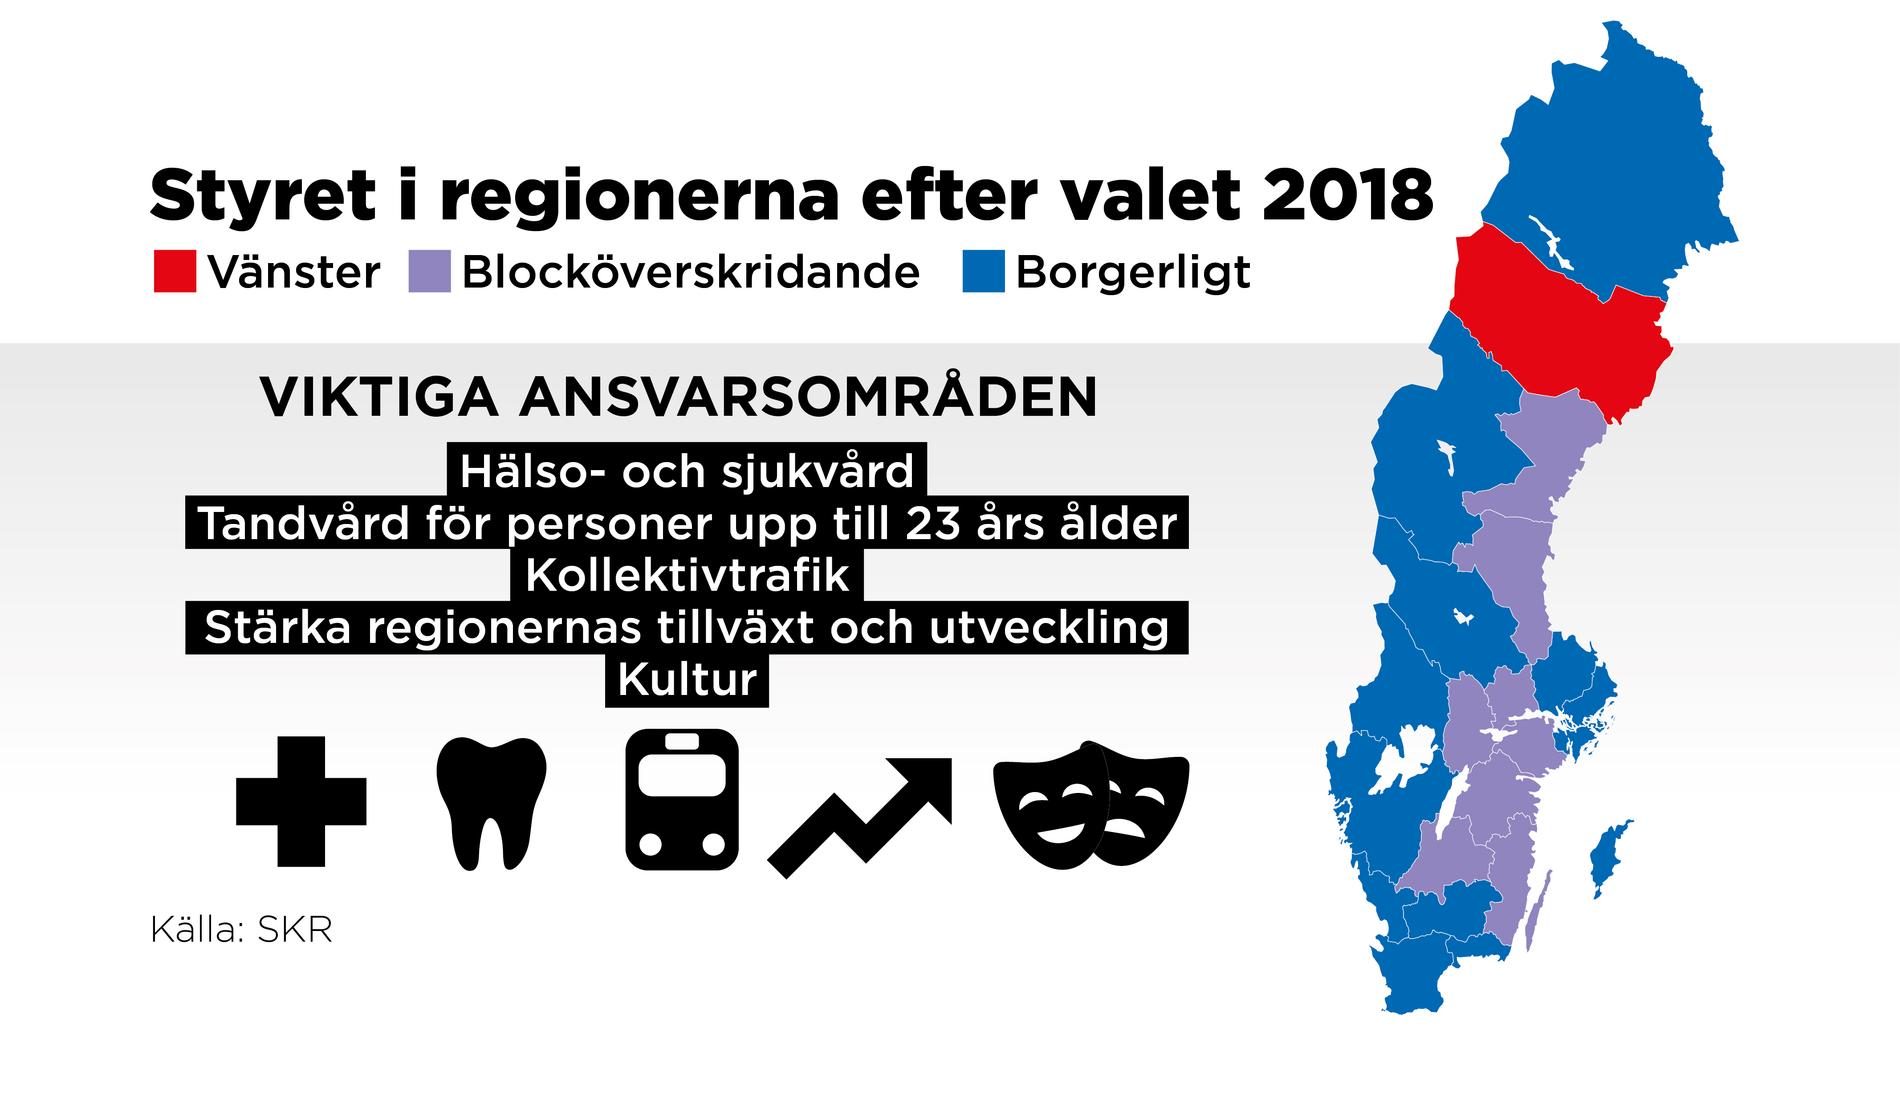 Alla regioner utom Västerbotten styrs av en borgerlig majoritet eller av blocköverskridande samarbete.